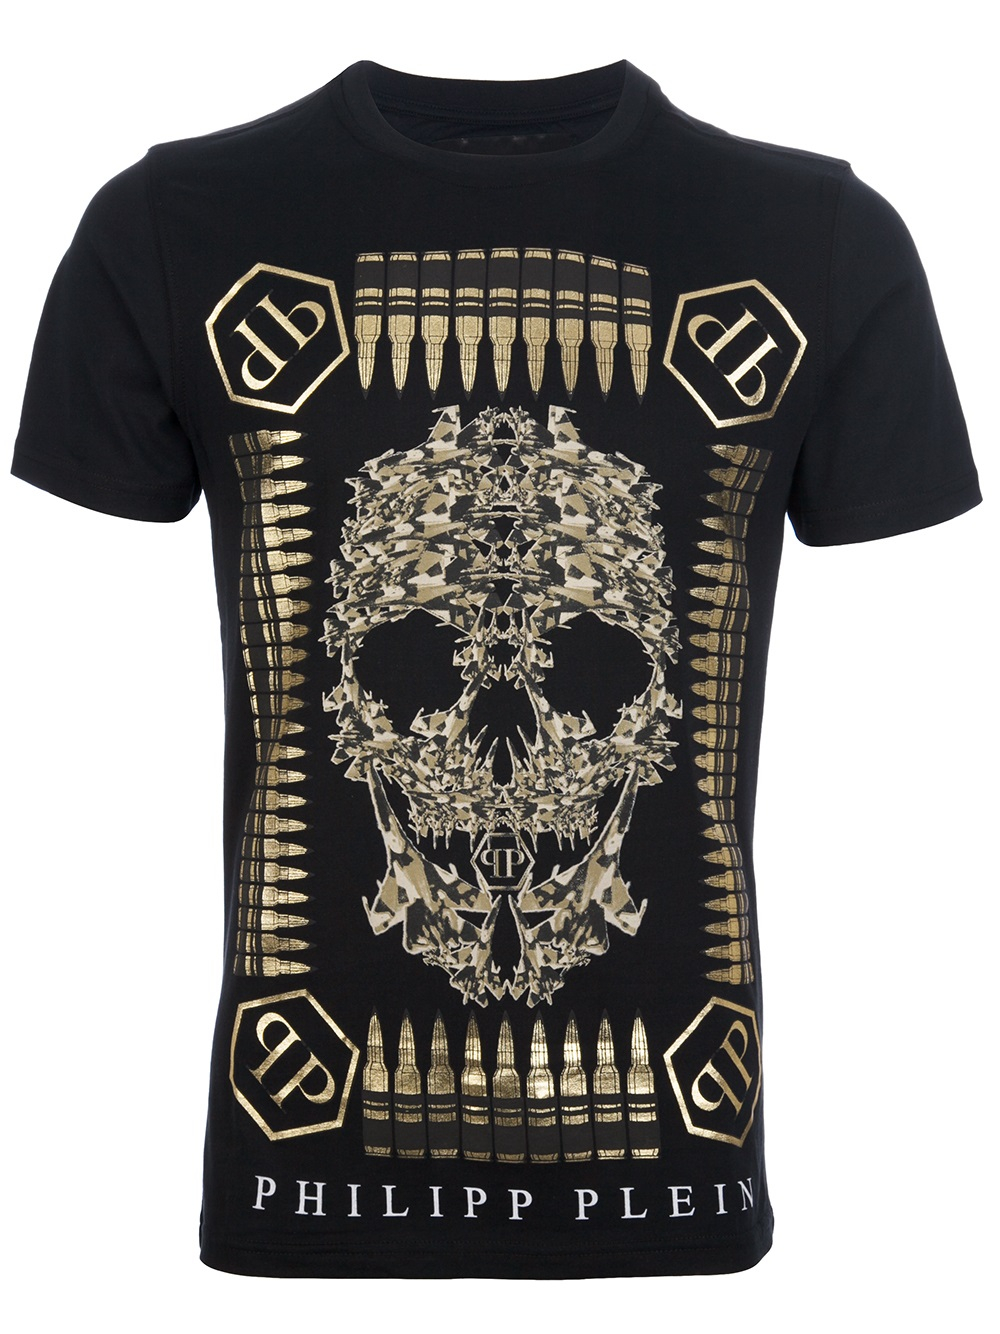 Philipp Plein Bullet Skull Print Tshirt in Black for Men - Lyst